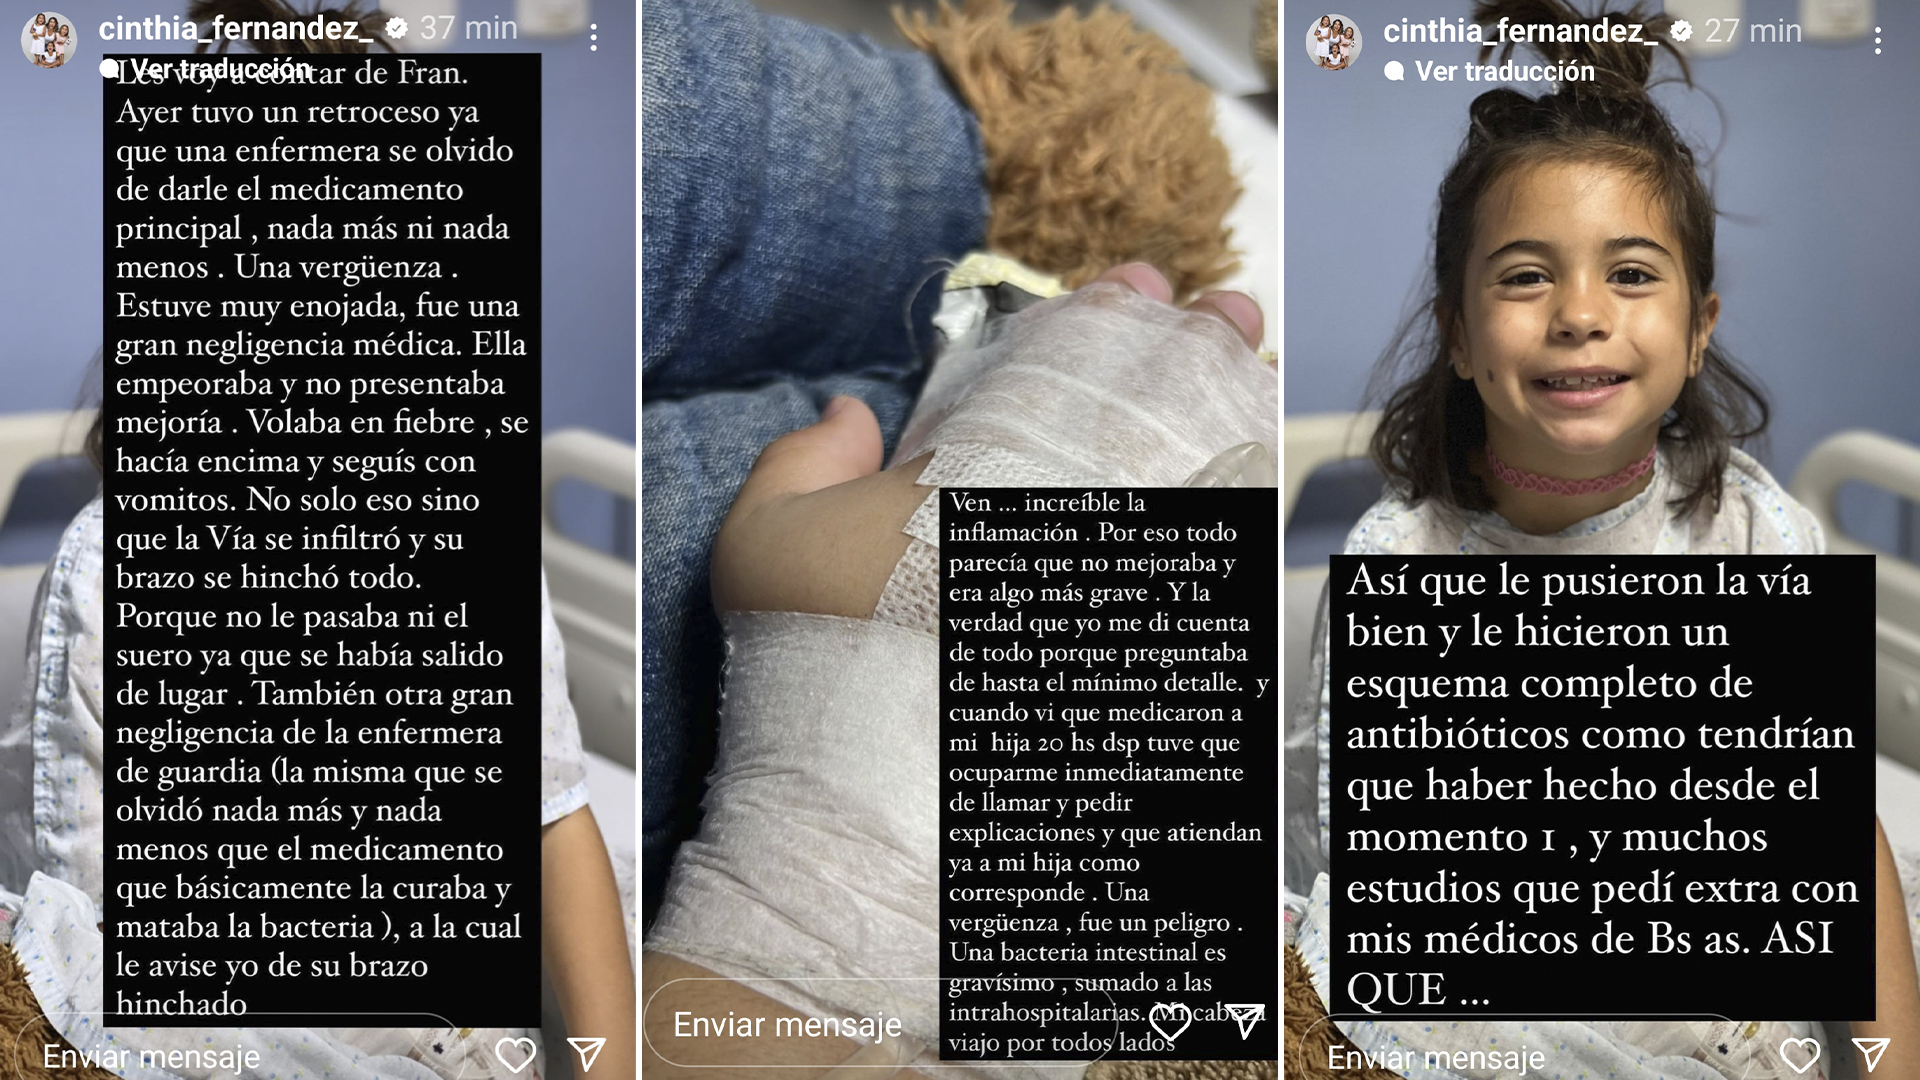 El relato de Cinthia Fernández en Instagram